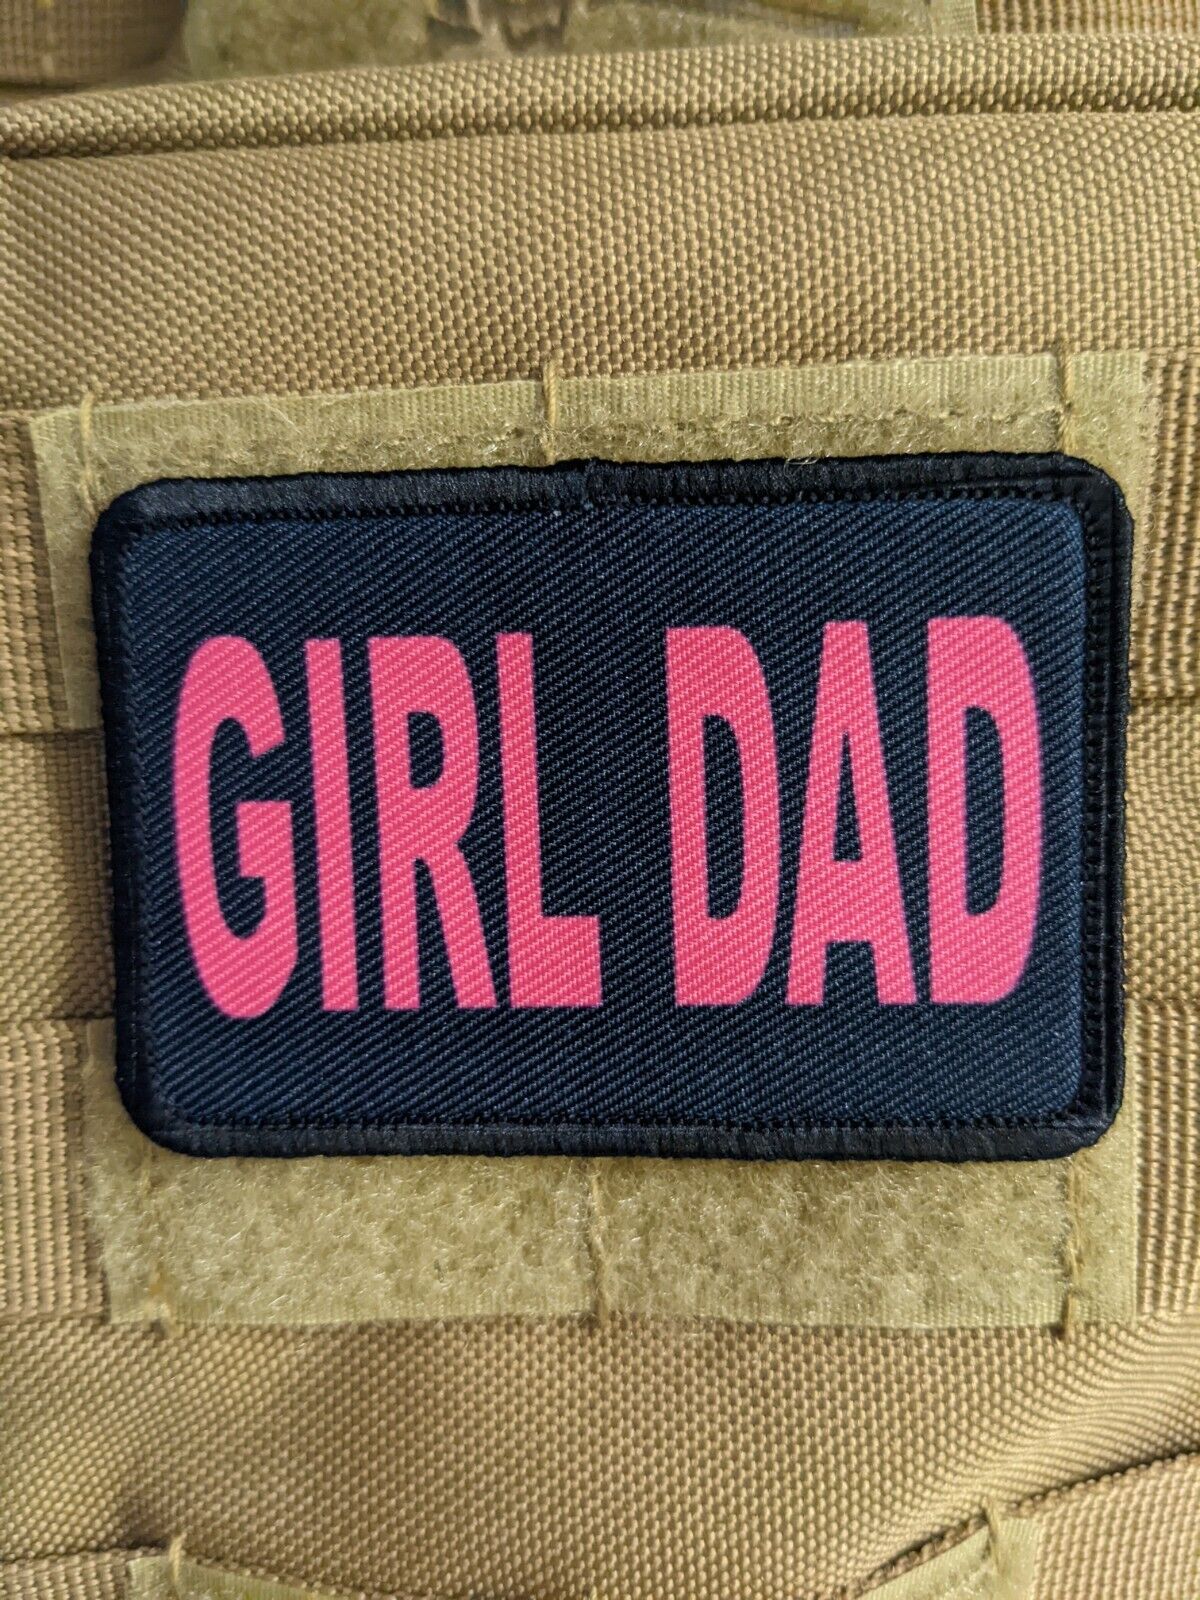 Girl dad daddy's girl meme 2